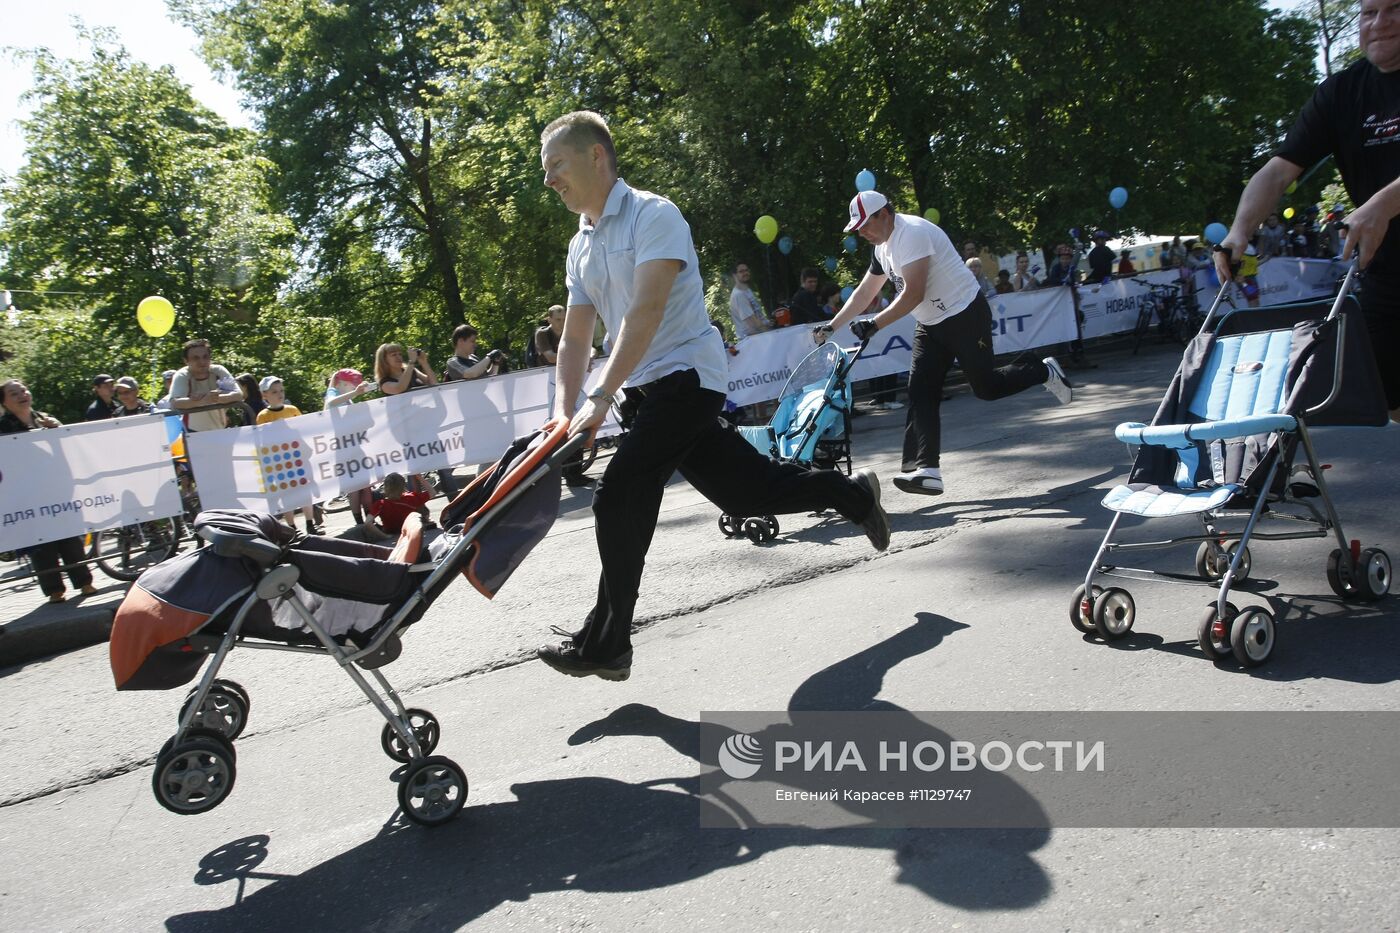 Фестиваль "День колеса" в Калининграде